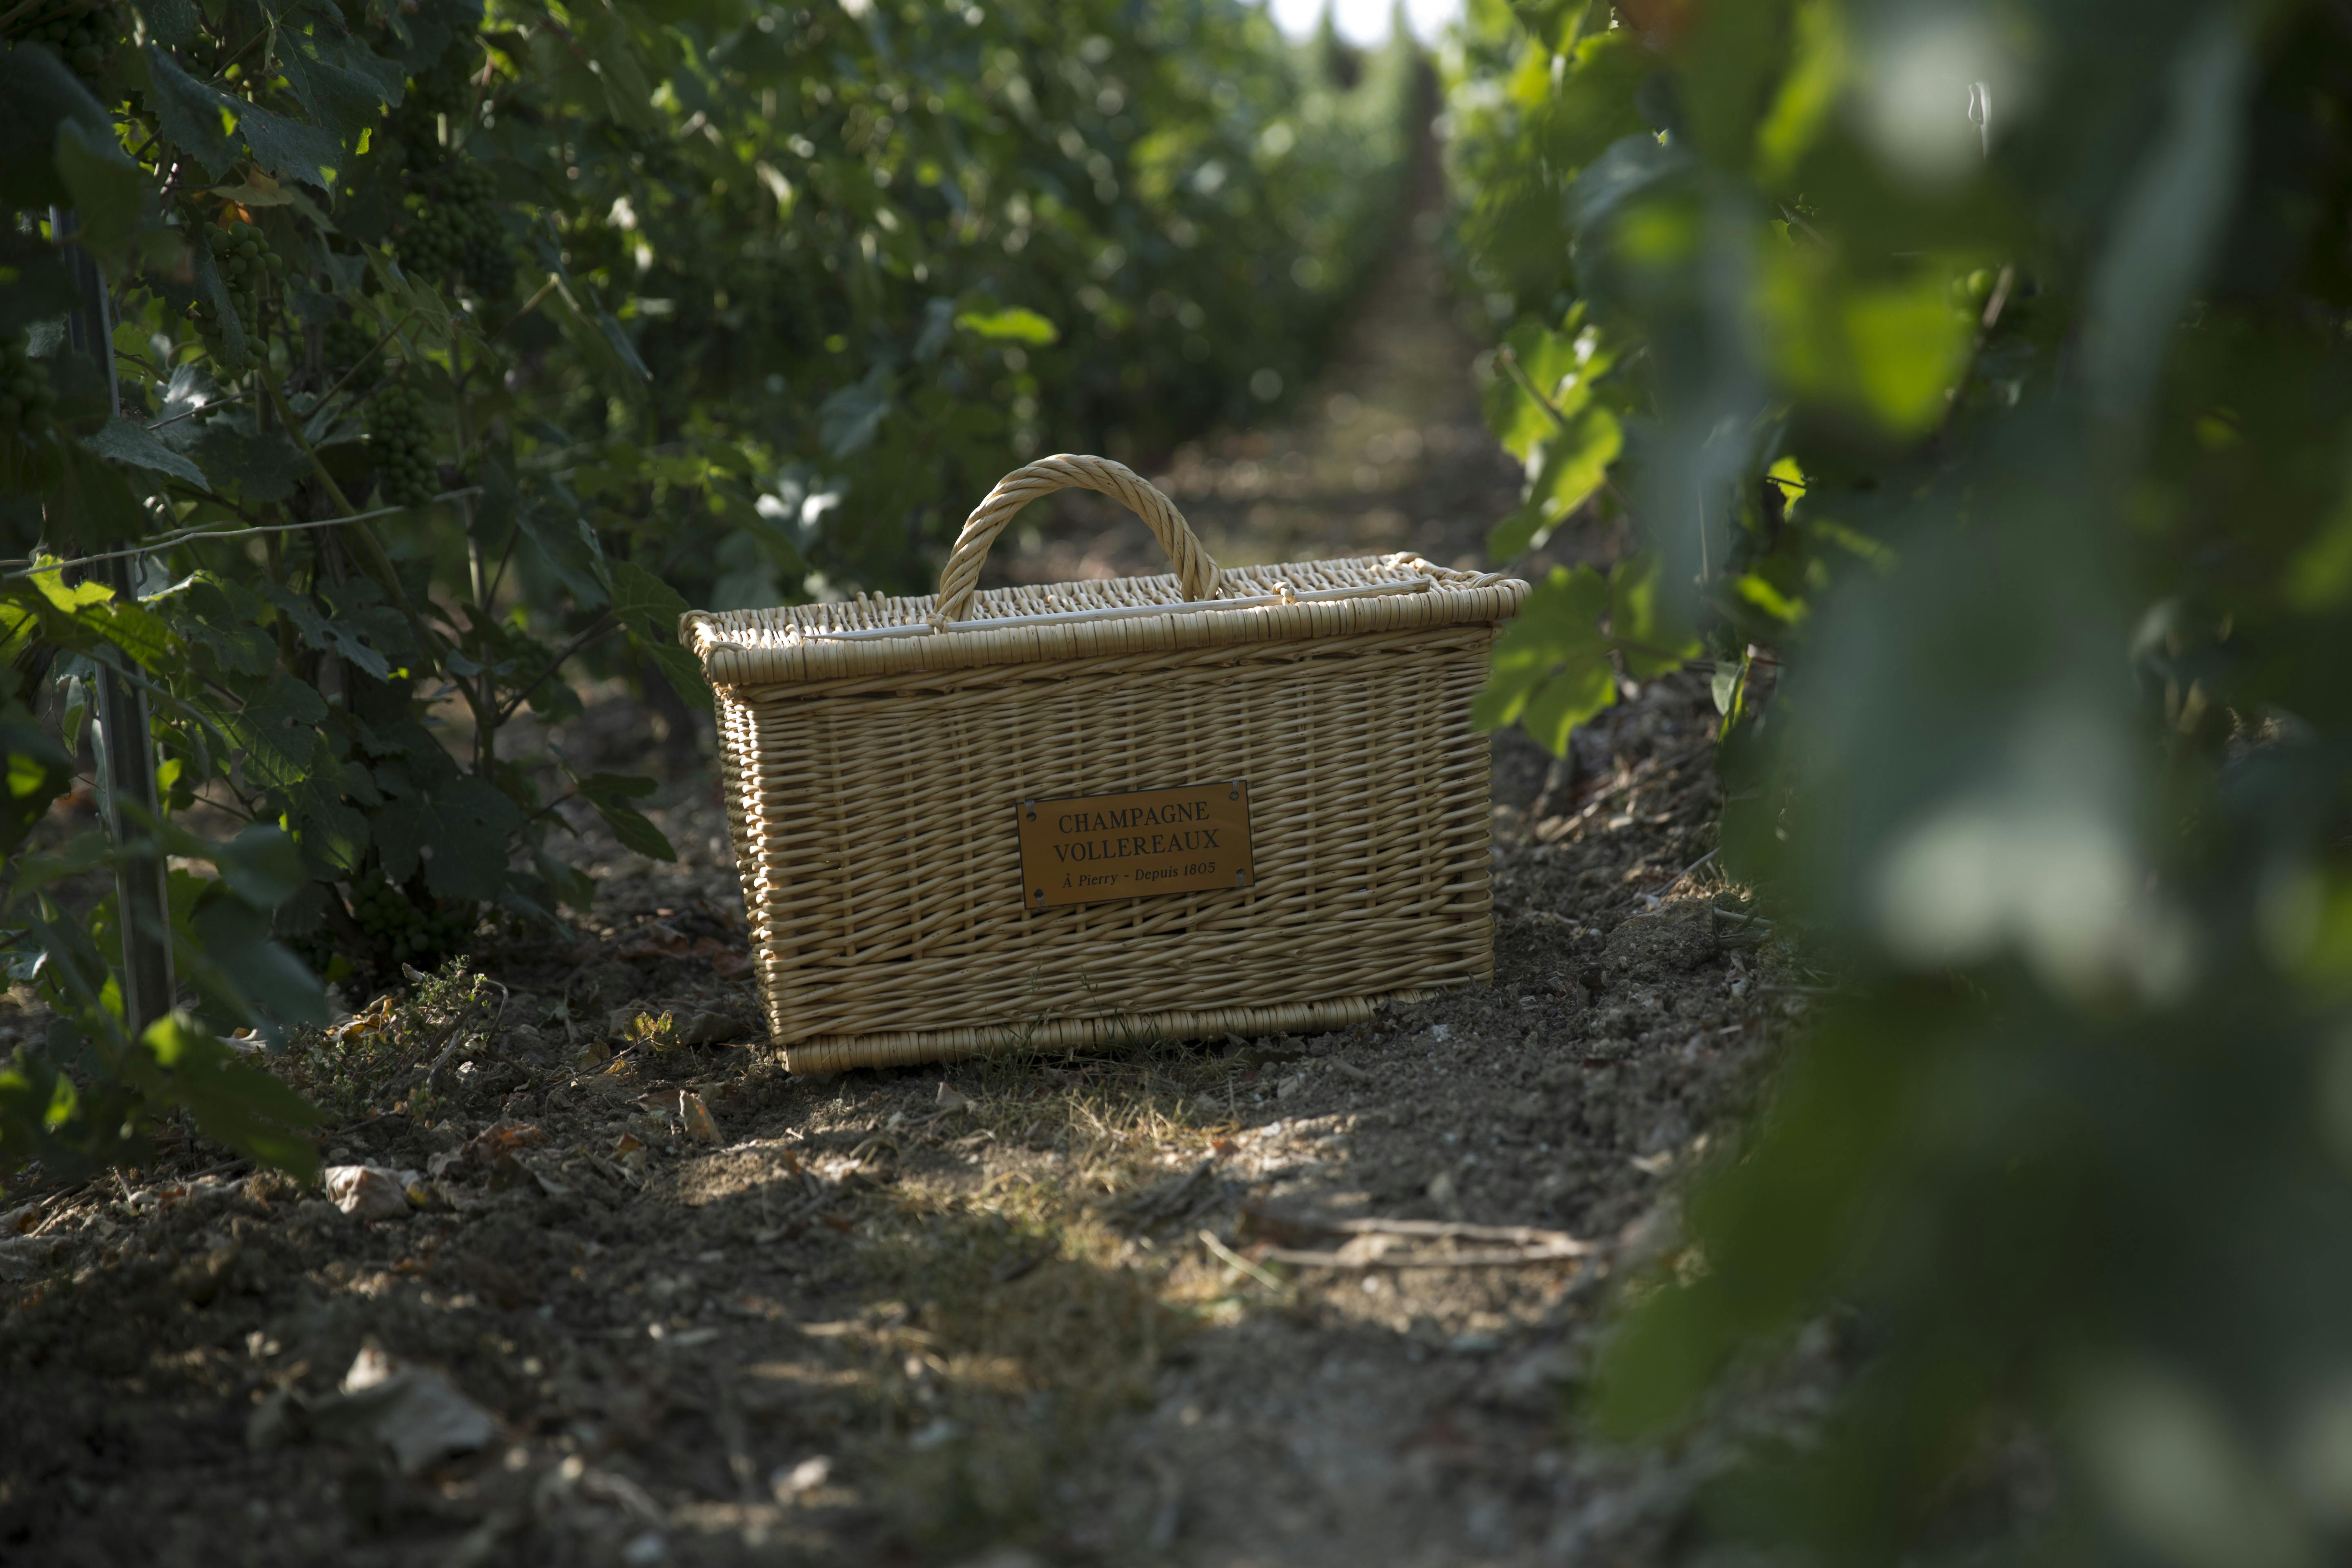 Rondleiding door de Vollereaux Champagne-kelder met een picknick in de wijngaard